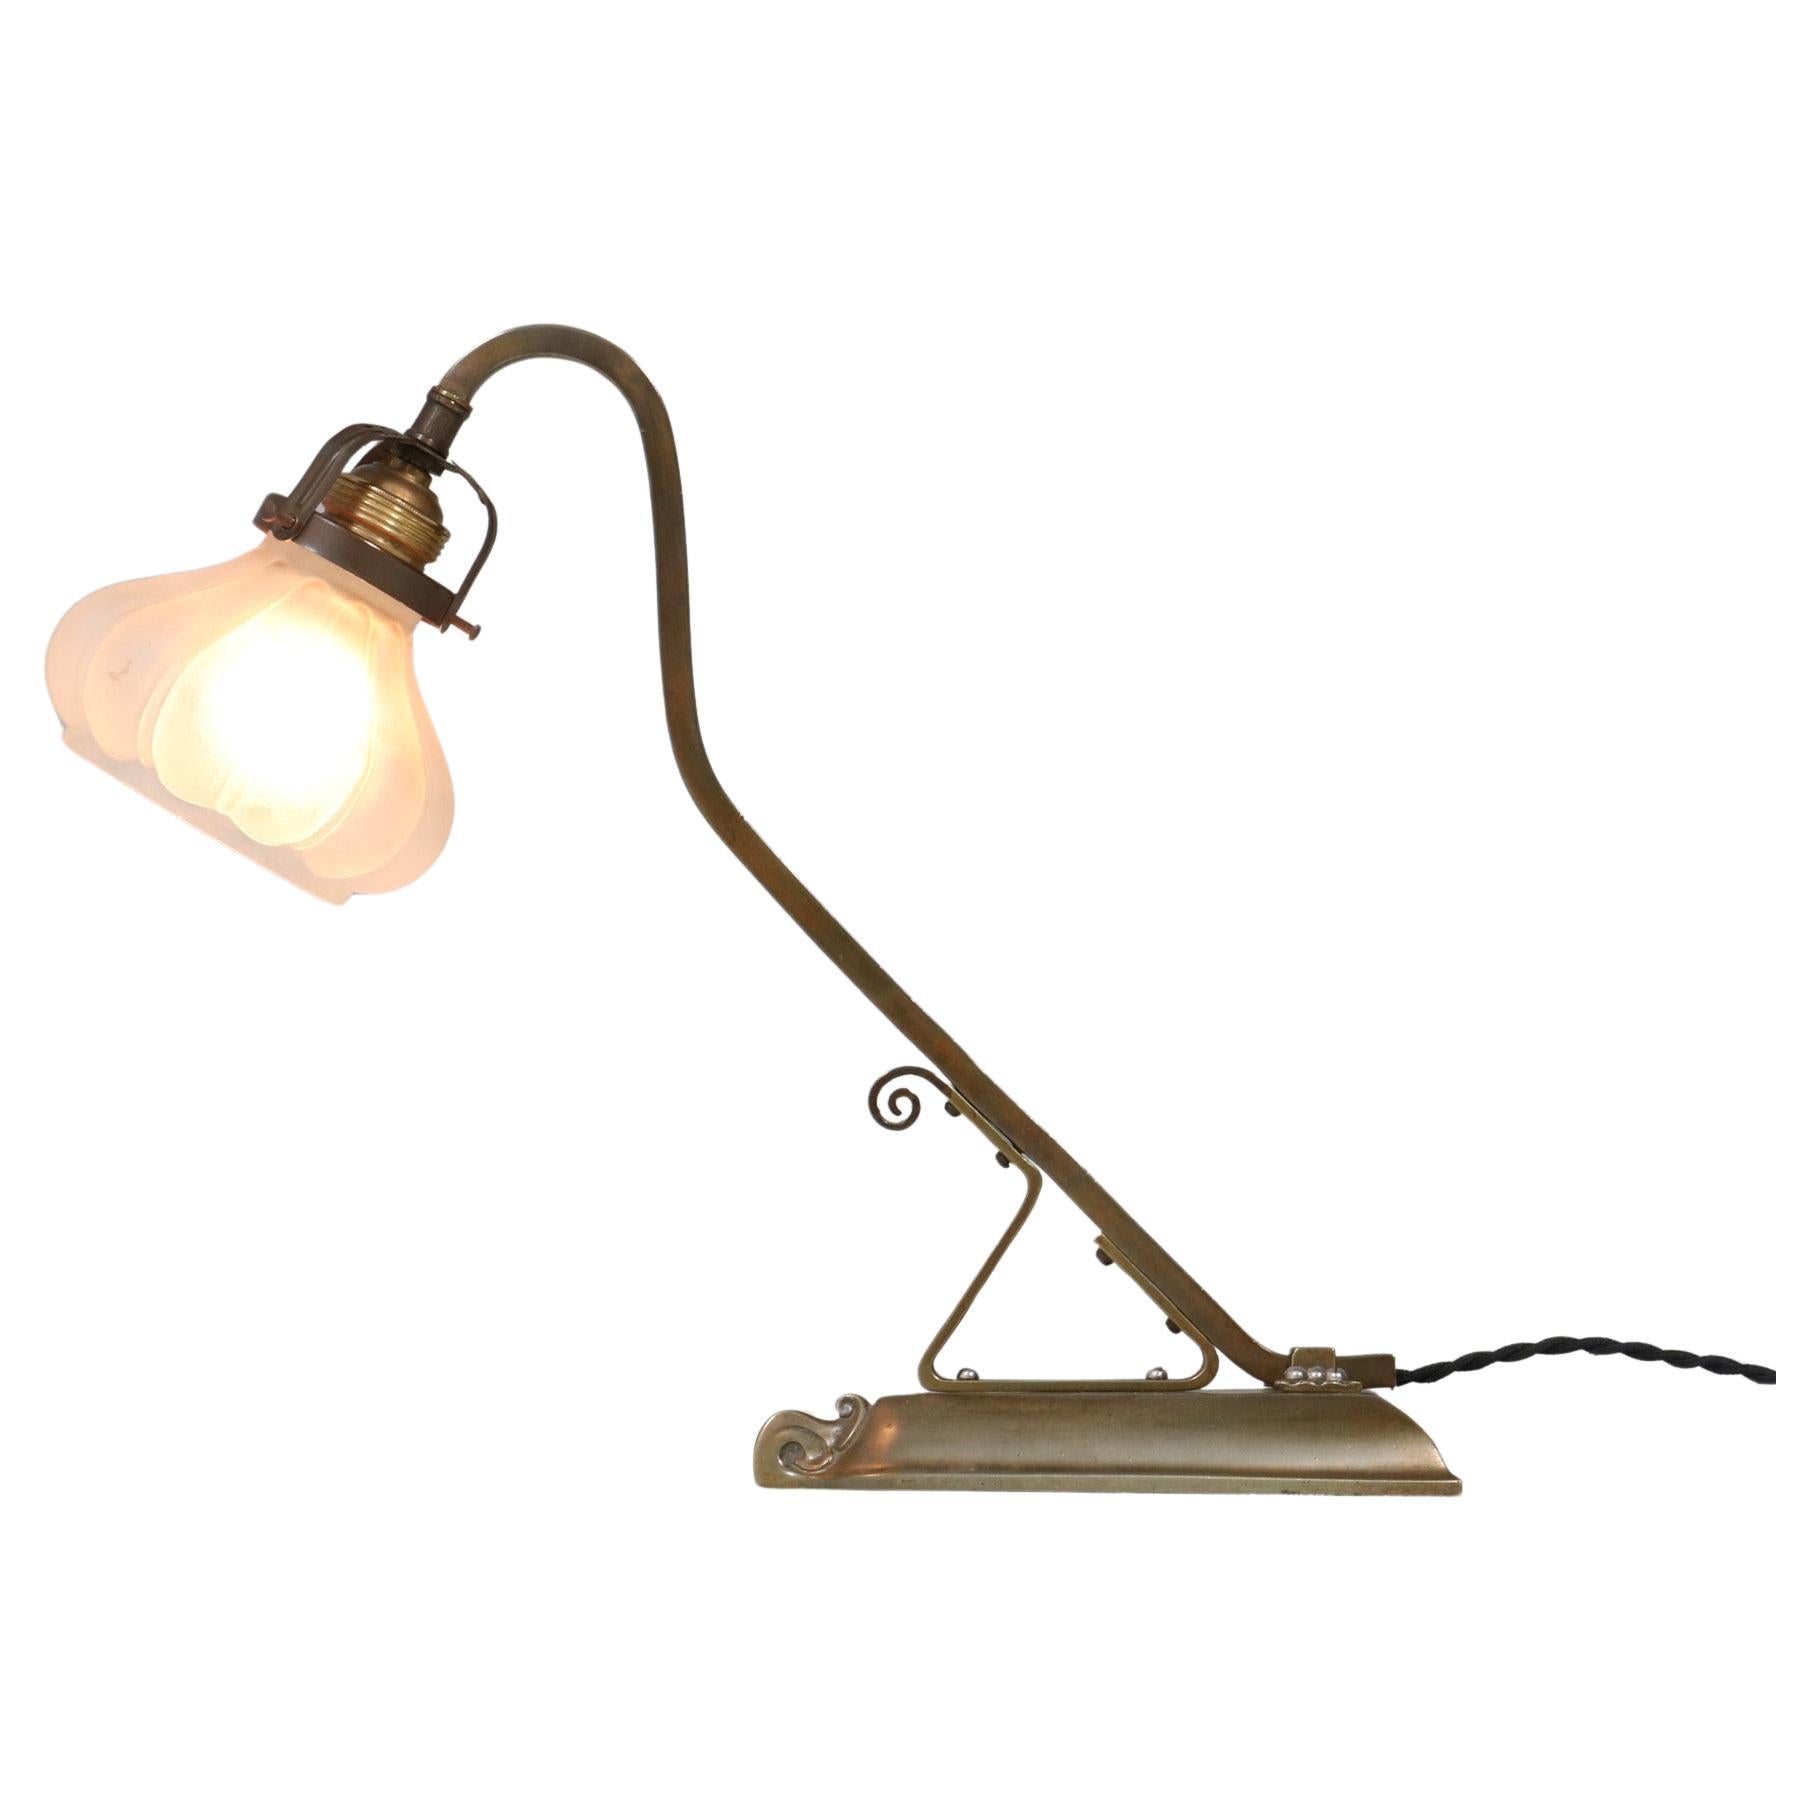  Jugendstil-Tischlampe oder Schreibtischlampe aus patiniertem Messing, 1900er Jahre